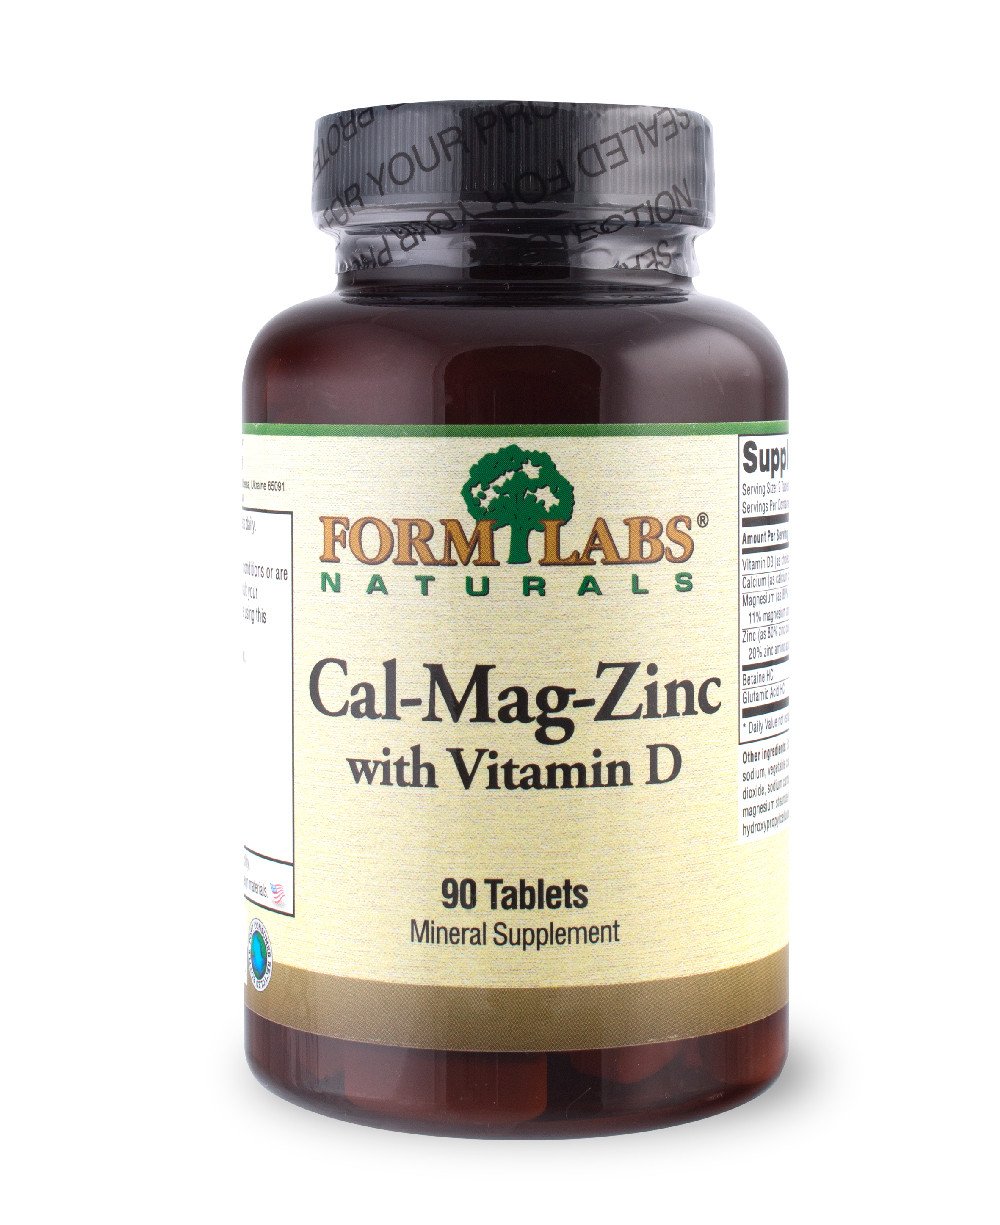 FLN Cal-Mag-Zinc+Vitamin D 90 tab,  мл, Form Labs Naturals. Витамины и минералы. Поддержание здоровья Укрепление иммунитета 